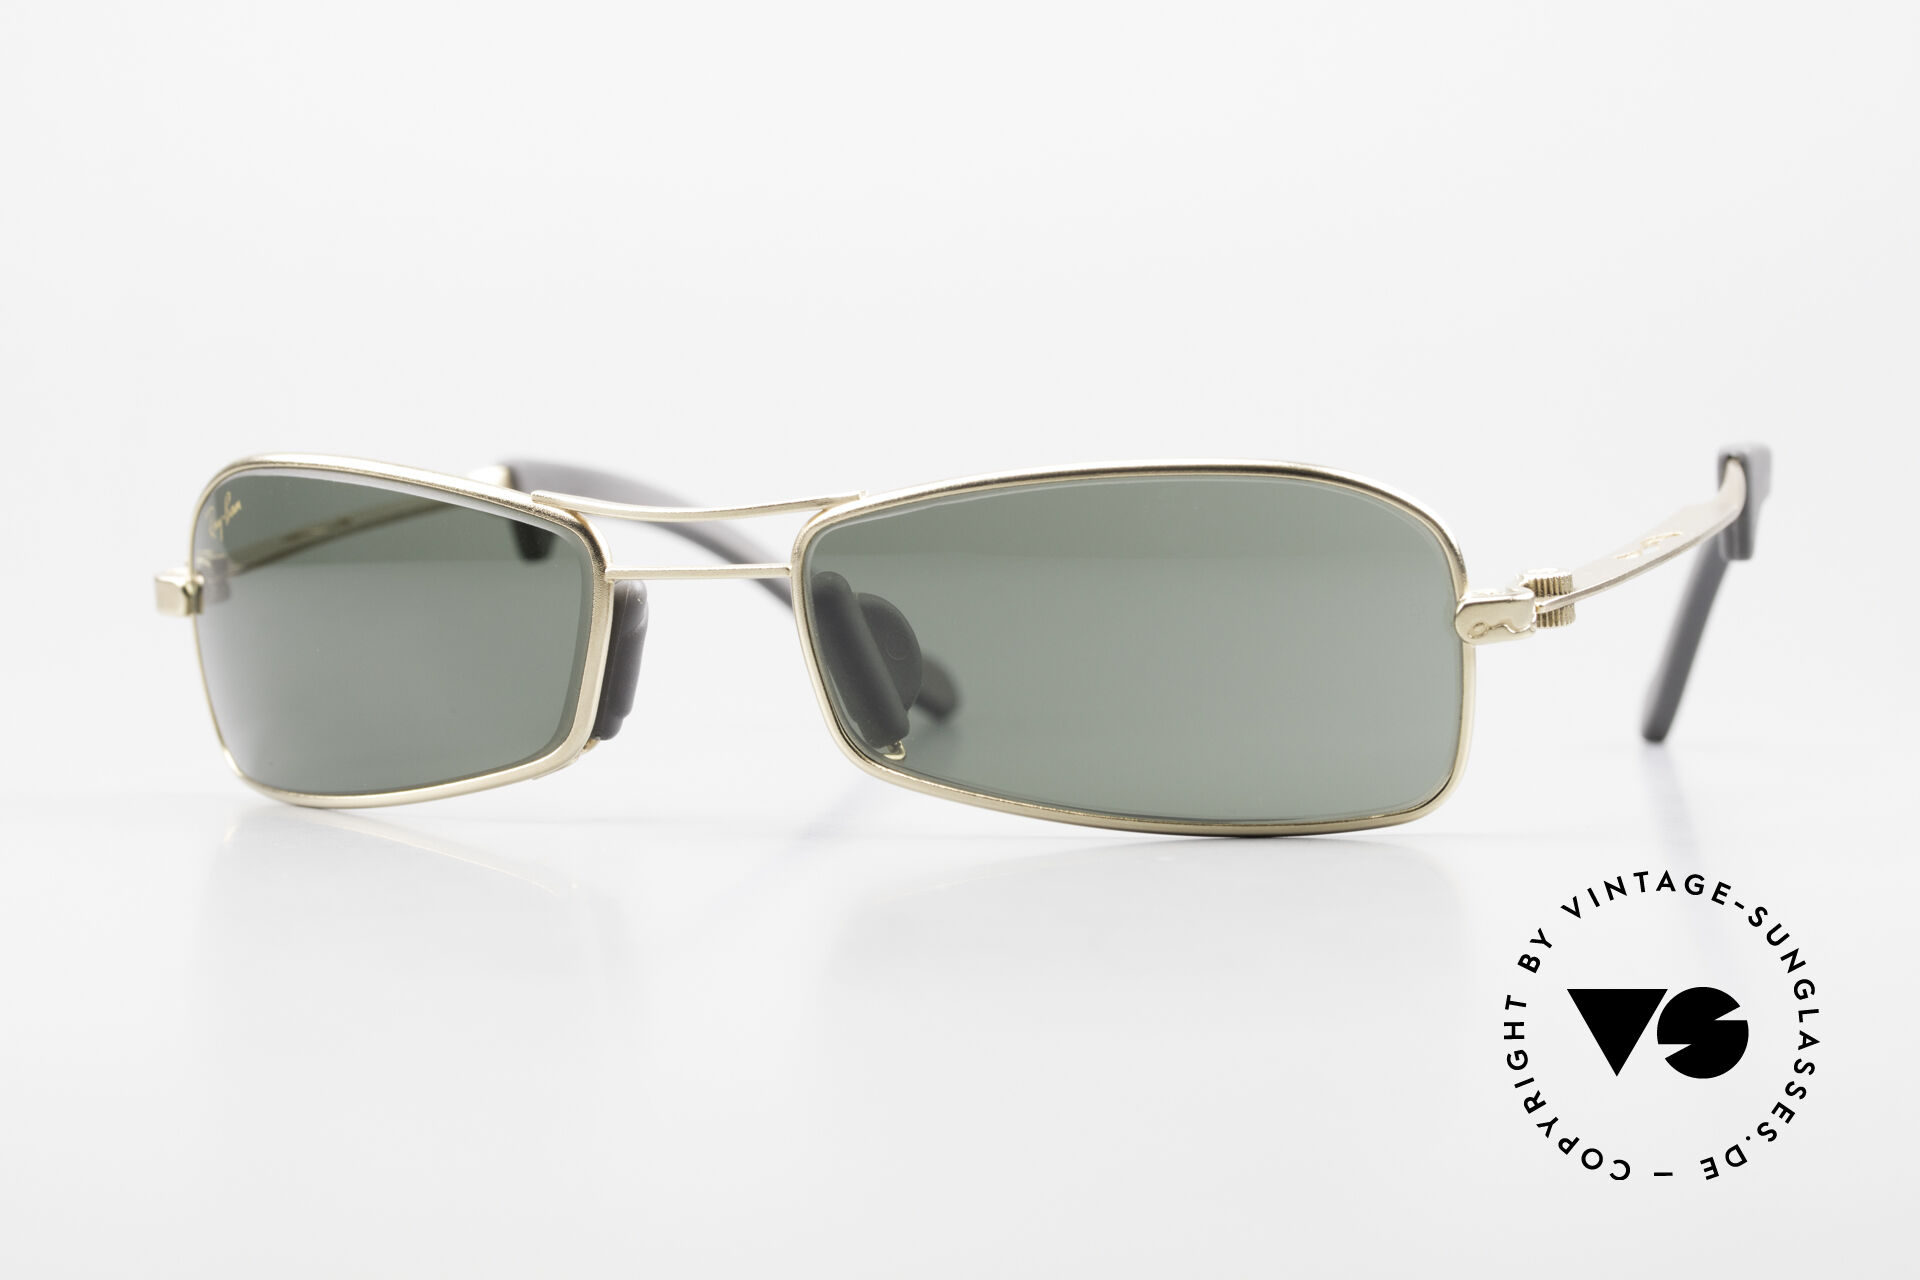 Sunglasses Ray Ban Orbs 9 Base Square G15 Green B&L USA Shades